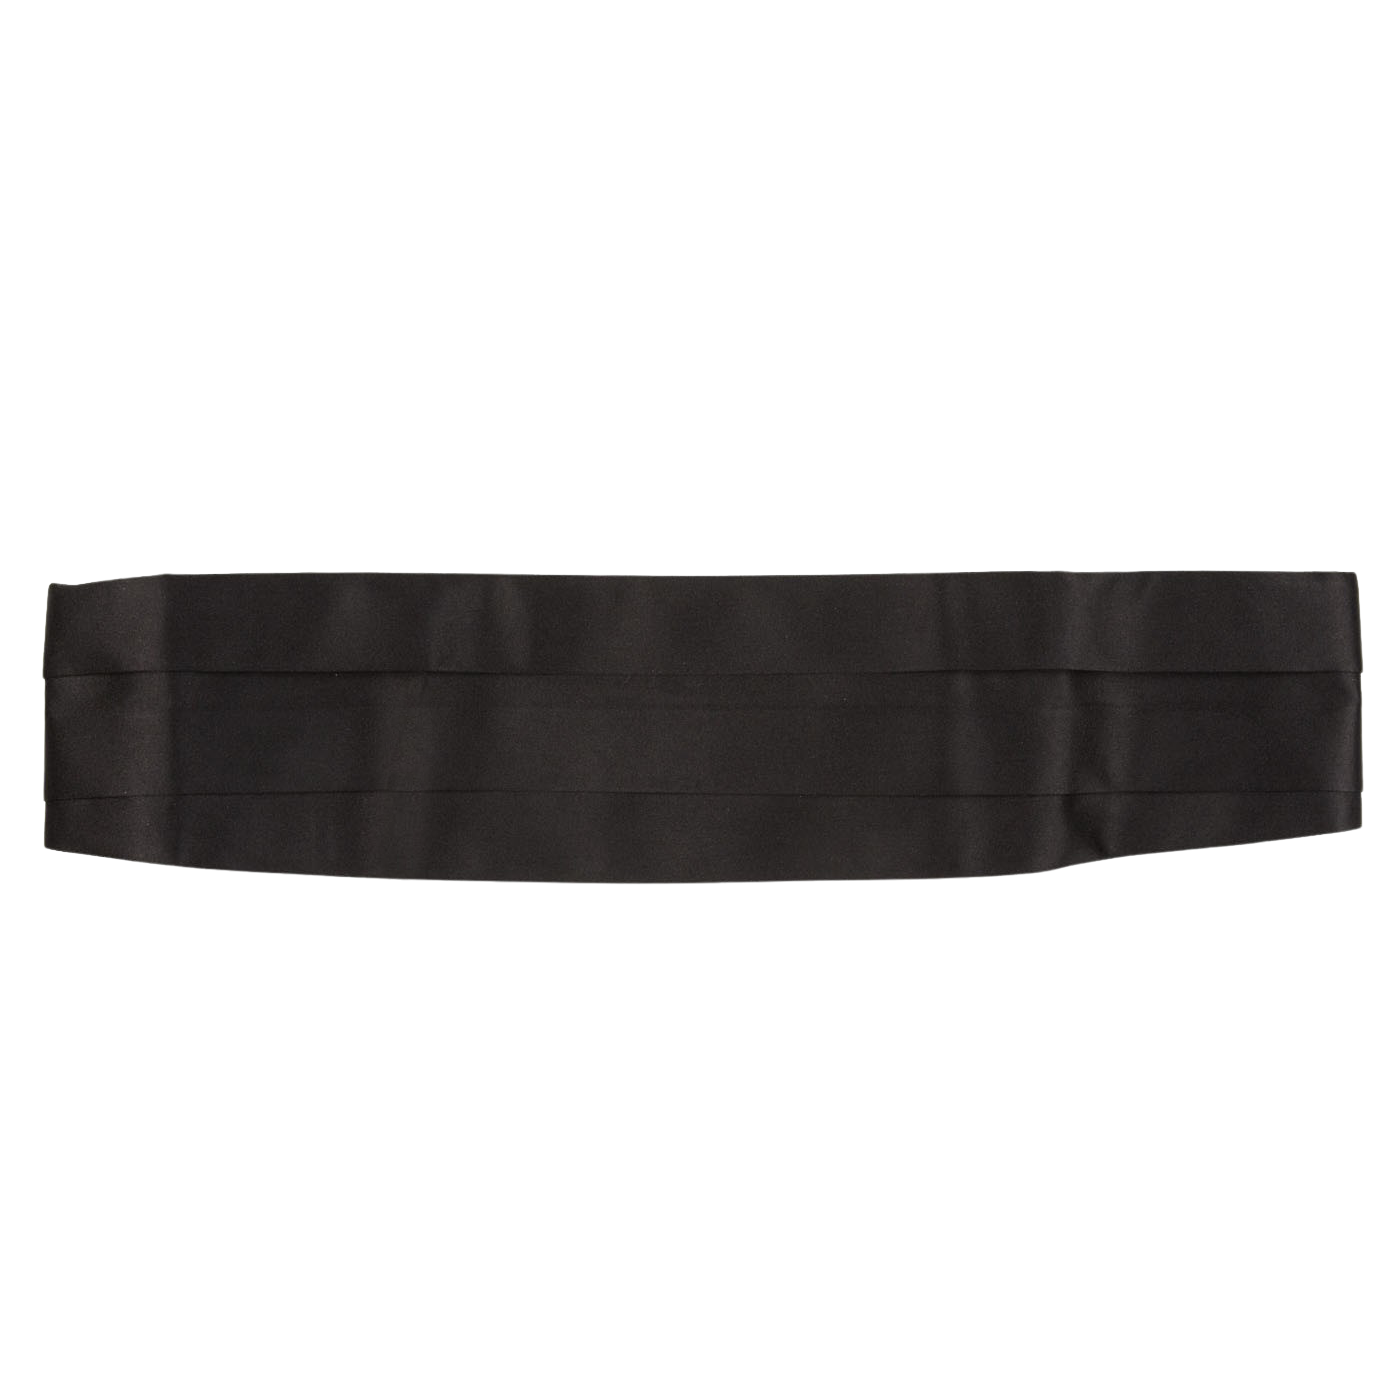 A Canali Black Pure Silk Pleated Cummerbund on a white background.